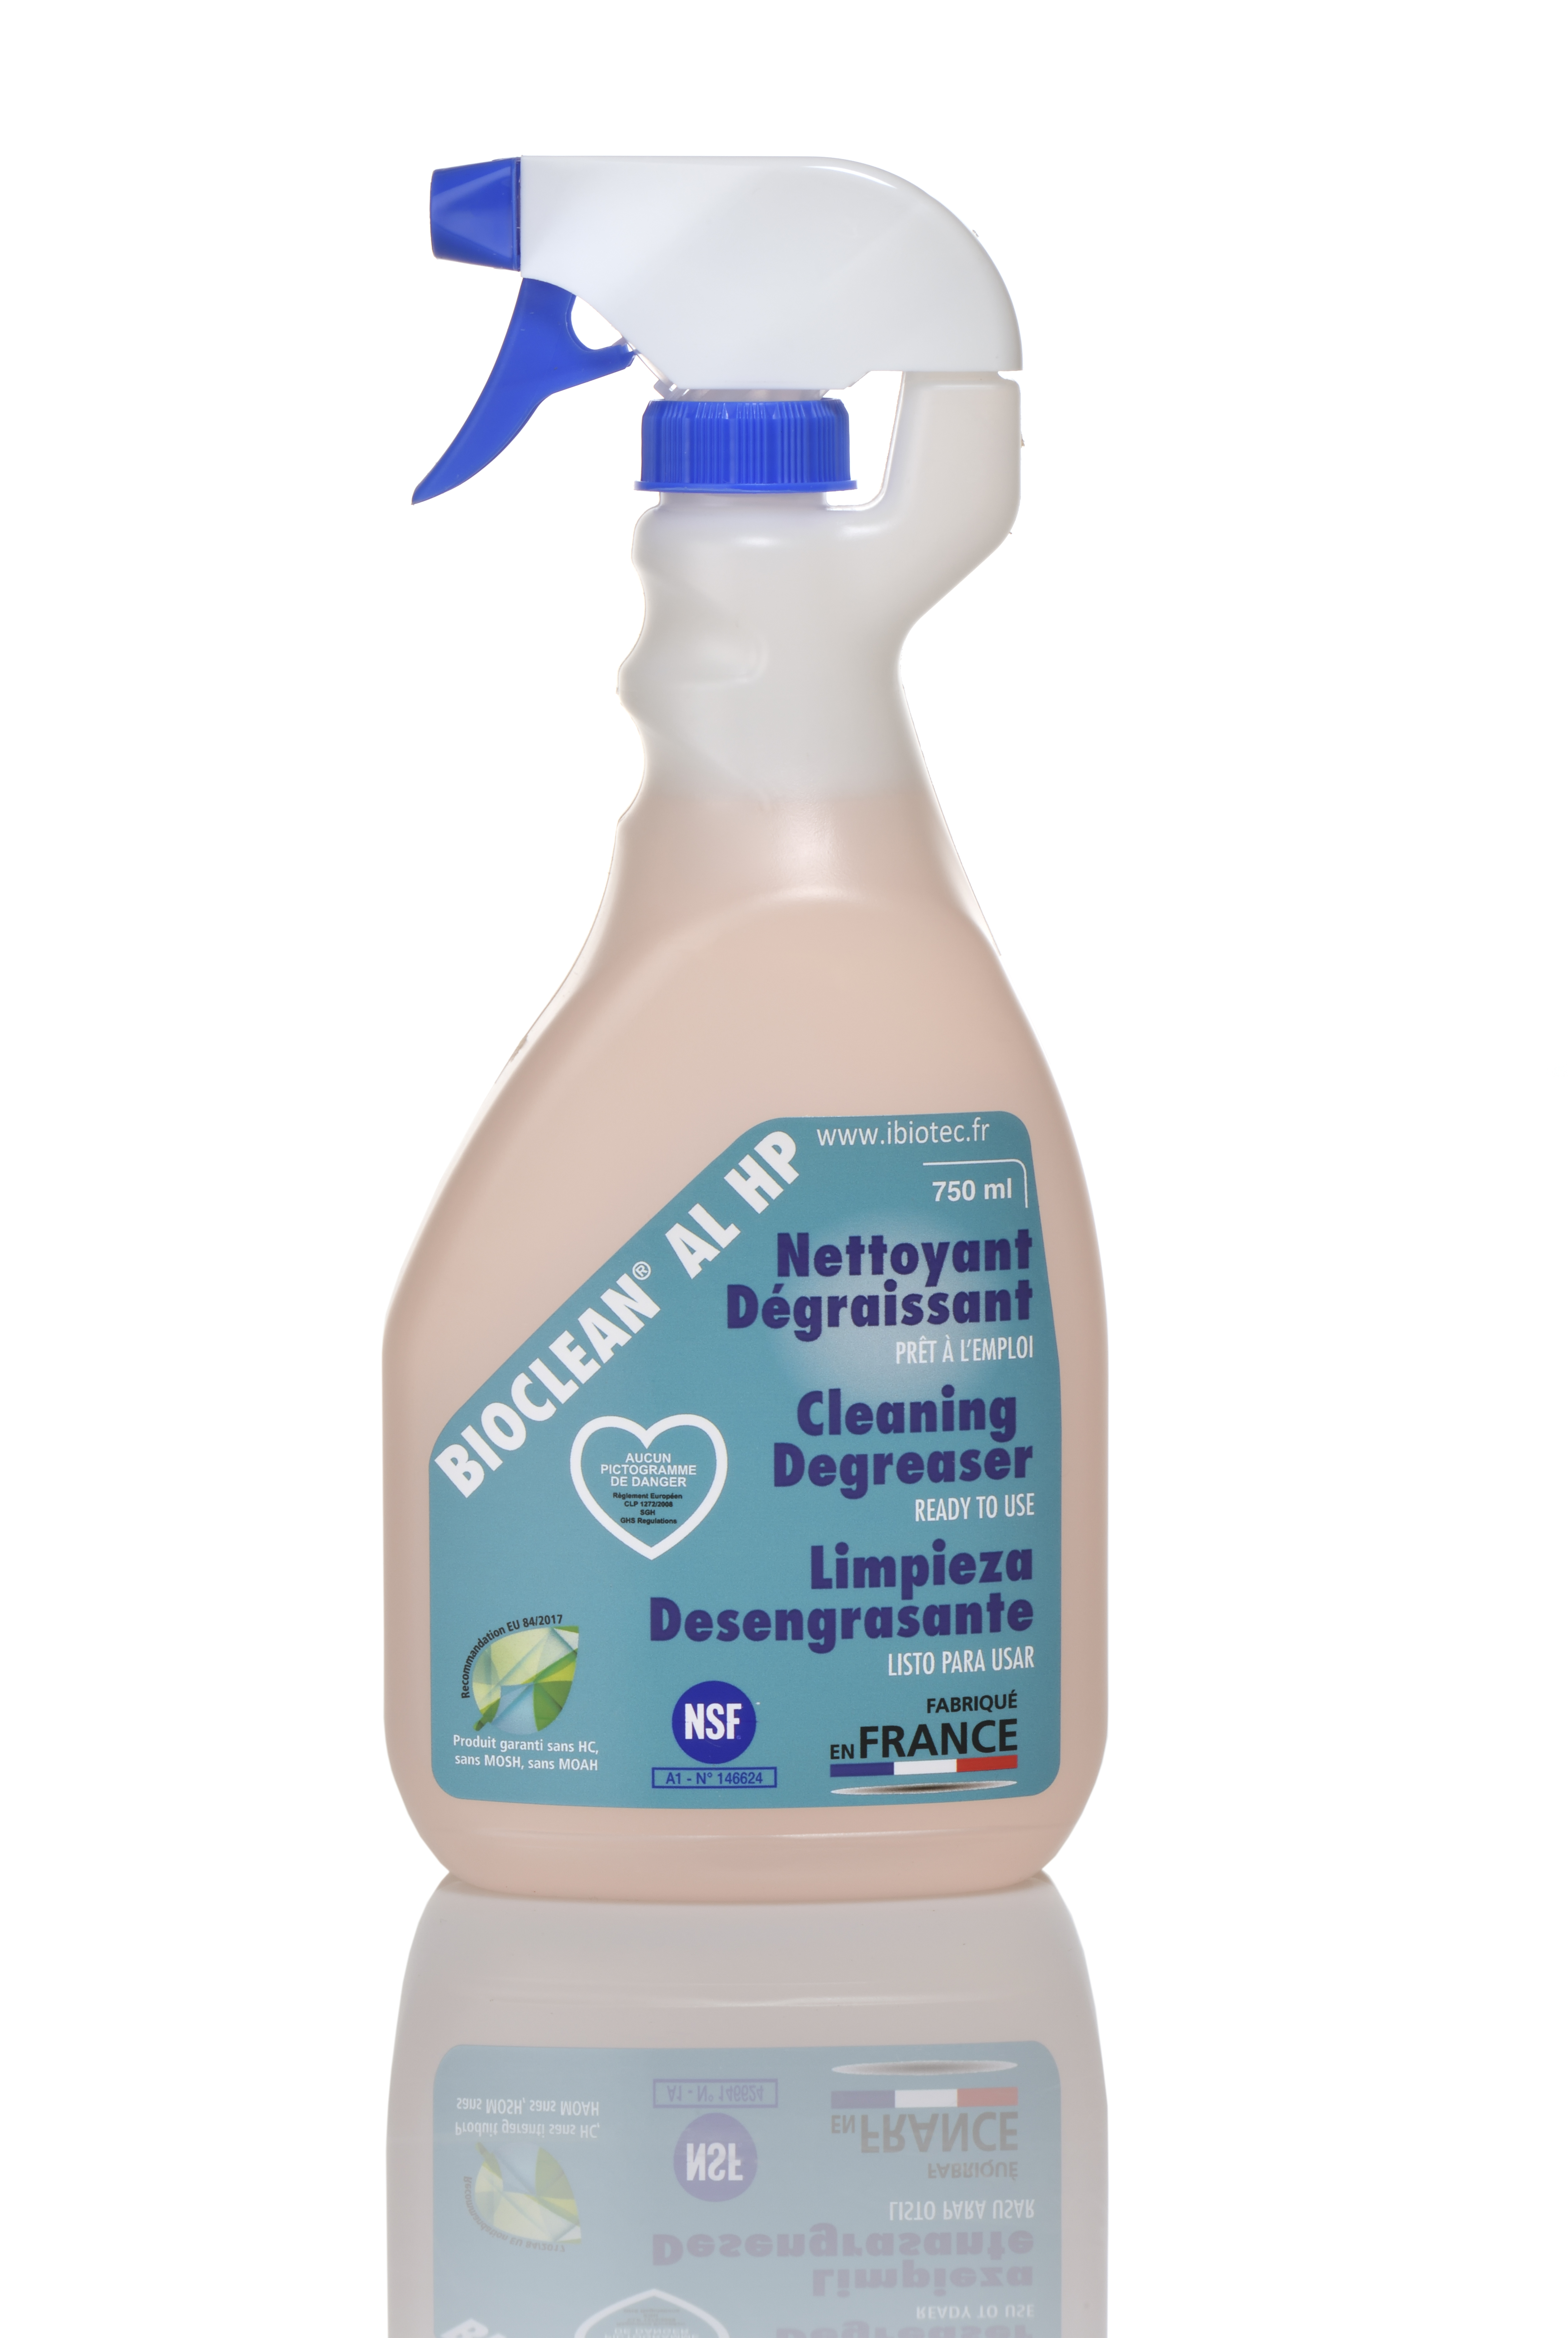 Kraftigt vaskemiddel med 4 funktioner, rengøringsmiddel, affedtningsmiddel, afkalkningsmiddel, dekontamineringsmiddel. NSF A1-godkendt. Uden kulbrinter MOSH/POSH MOAH. Uden faresymboler Detekterbar DETECT BLUE(r) diffussør. Bionedbrydelig Kan bruges på alle overflader, alle substrater. BIOCLEAN AL HP vaskemiddel IBIOTEC, klar til brug, NSF H1-godkendt, flammesikkert, uden faresymboler, uden KULBRINTER, MOSH, MOAH, til fjernelse af genstridige forureninger af organisk eller uorganisk oprindelse. Produkt til industriel brug. produkter uden mosh posh moah. fedt uden mosh posh moah. smøremiddel uden mosh posh moah. opløsningmiddel uden mosh posh moah. affedtningsmiddel uden mosh posh moah. rengøringsmiddel uden mosh posh moah. olier uden mosh posh moah. MOSH MOAH bestemmelse. MOSH POSH MOAH